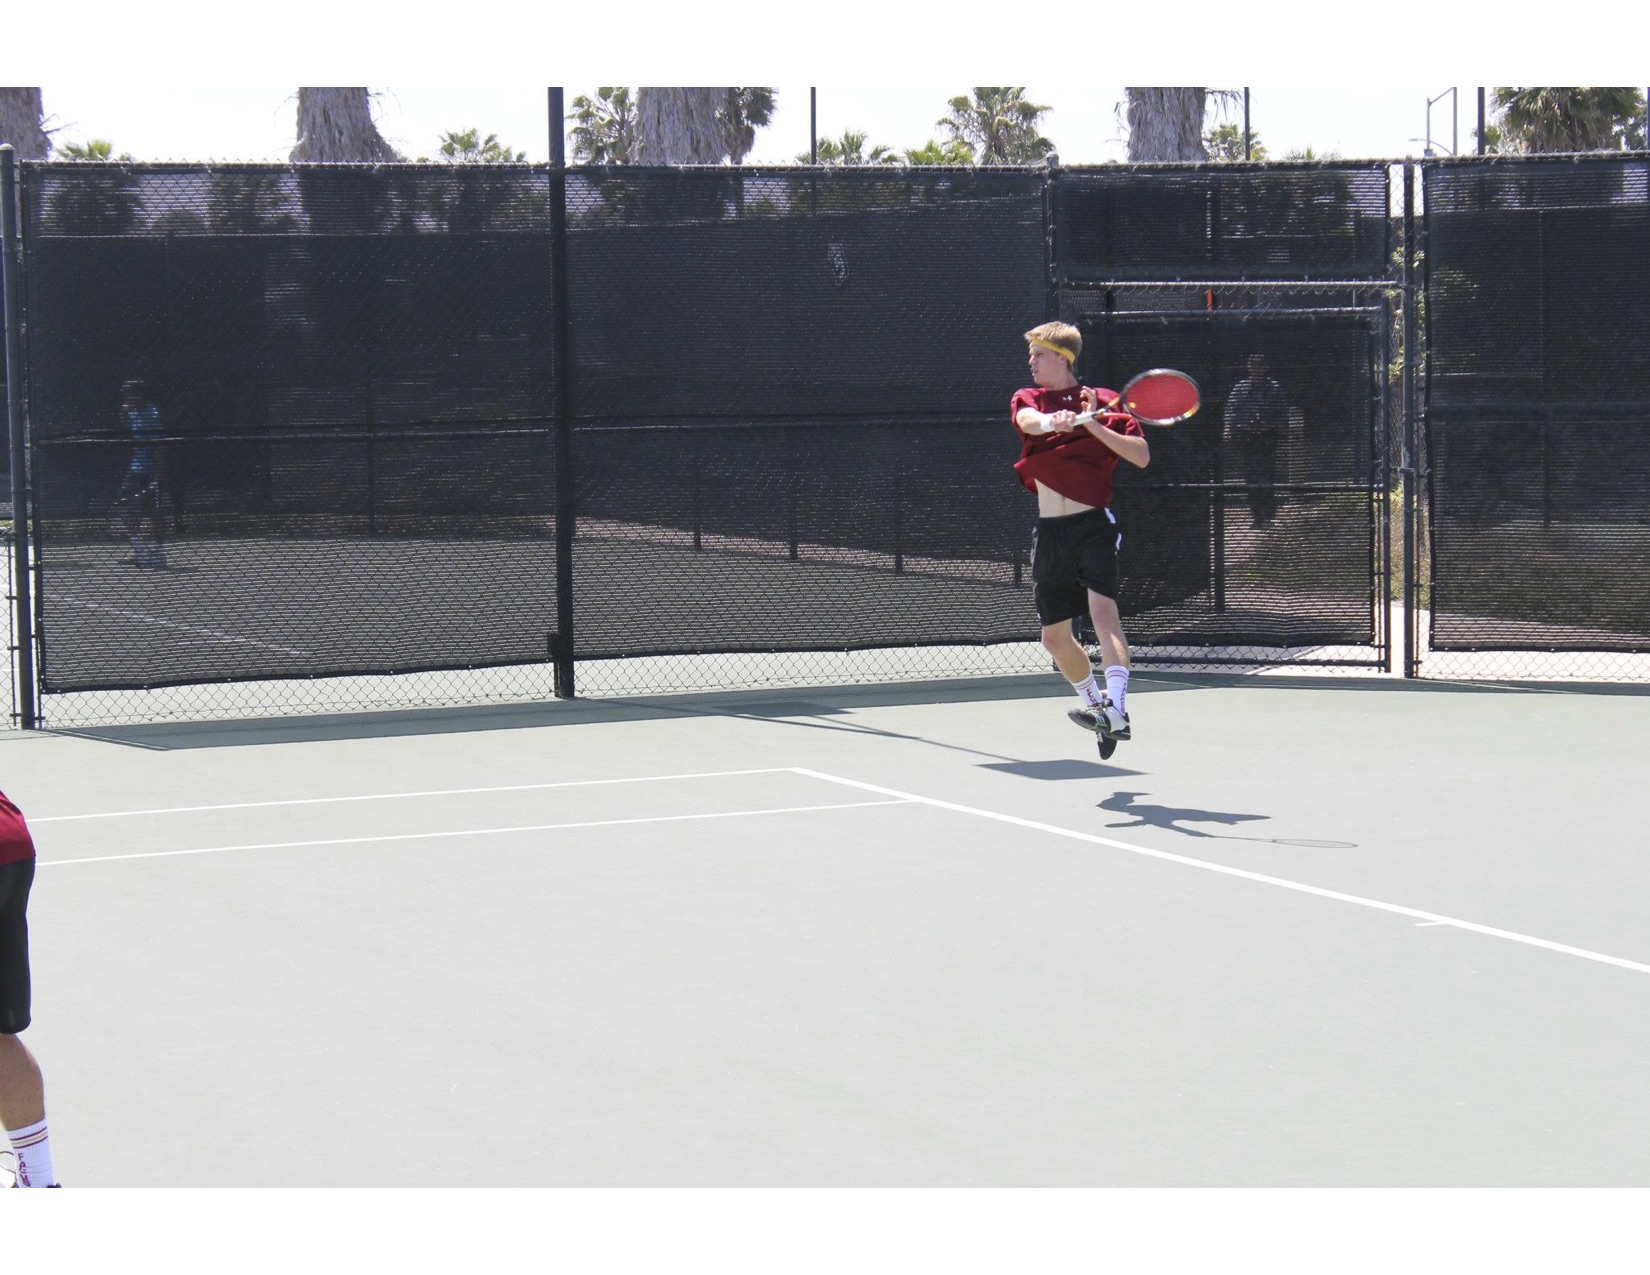 Connor E. teaches tennis lessons in Napa, CA